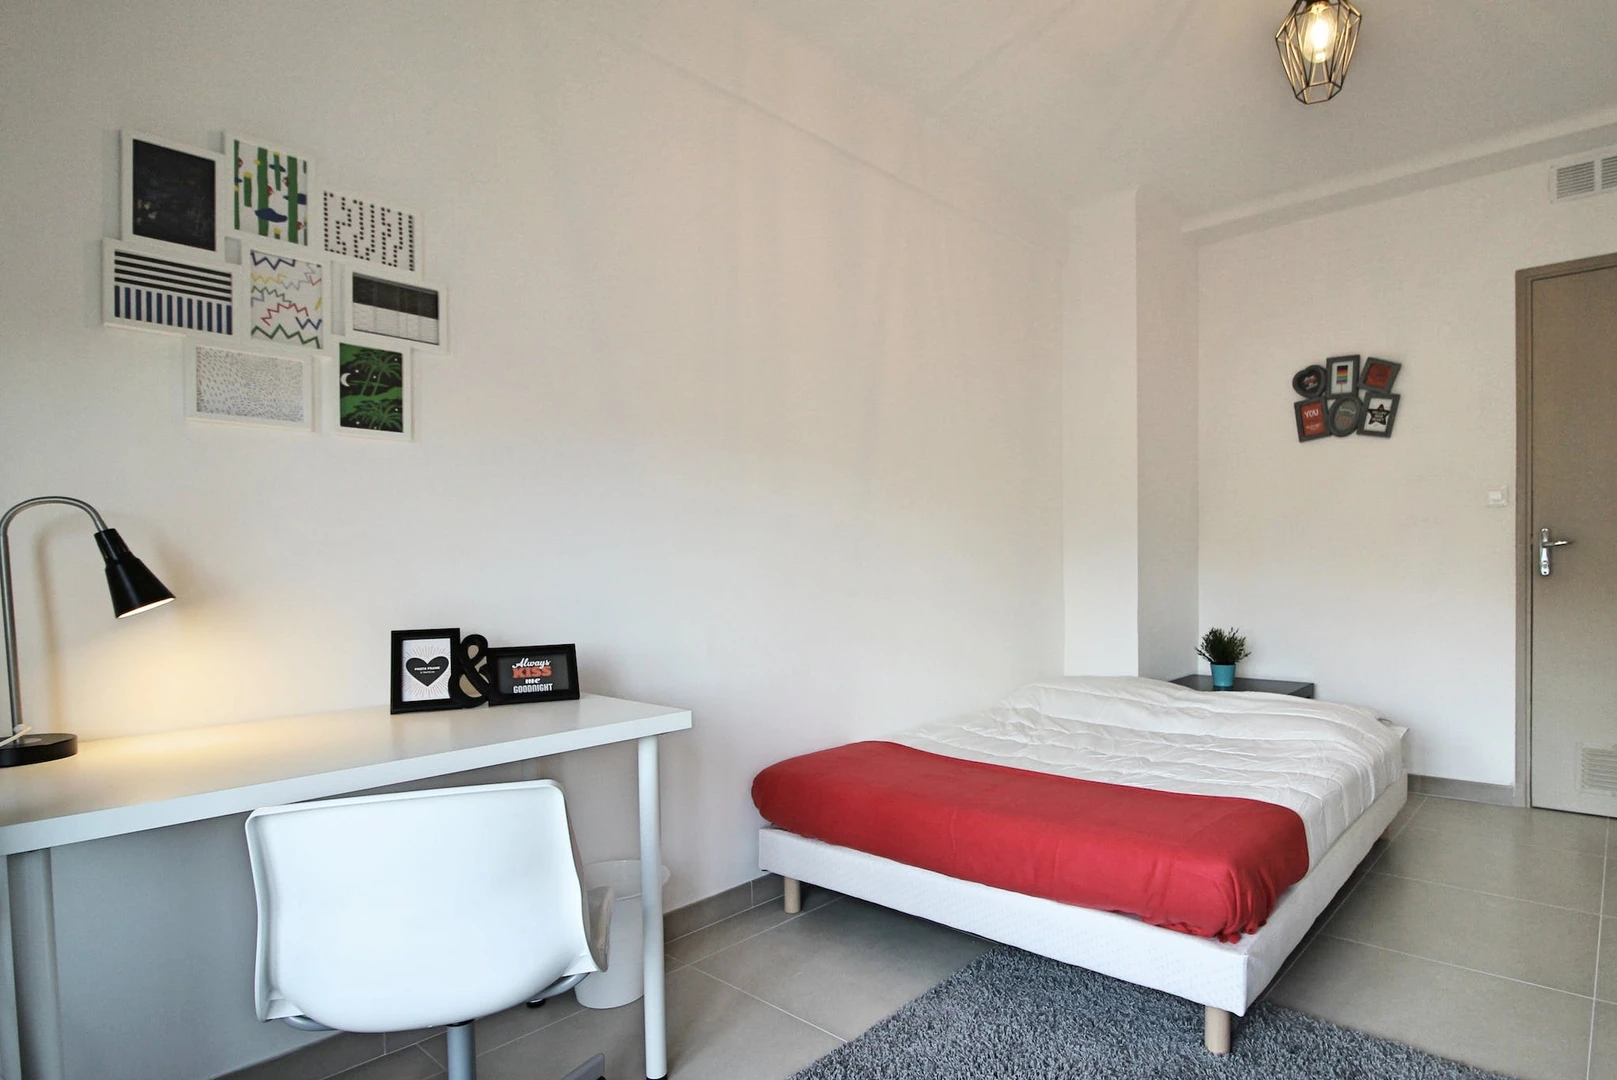 Alquiler de habitación en piso compartido en Marsella